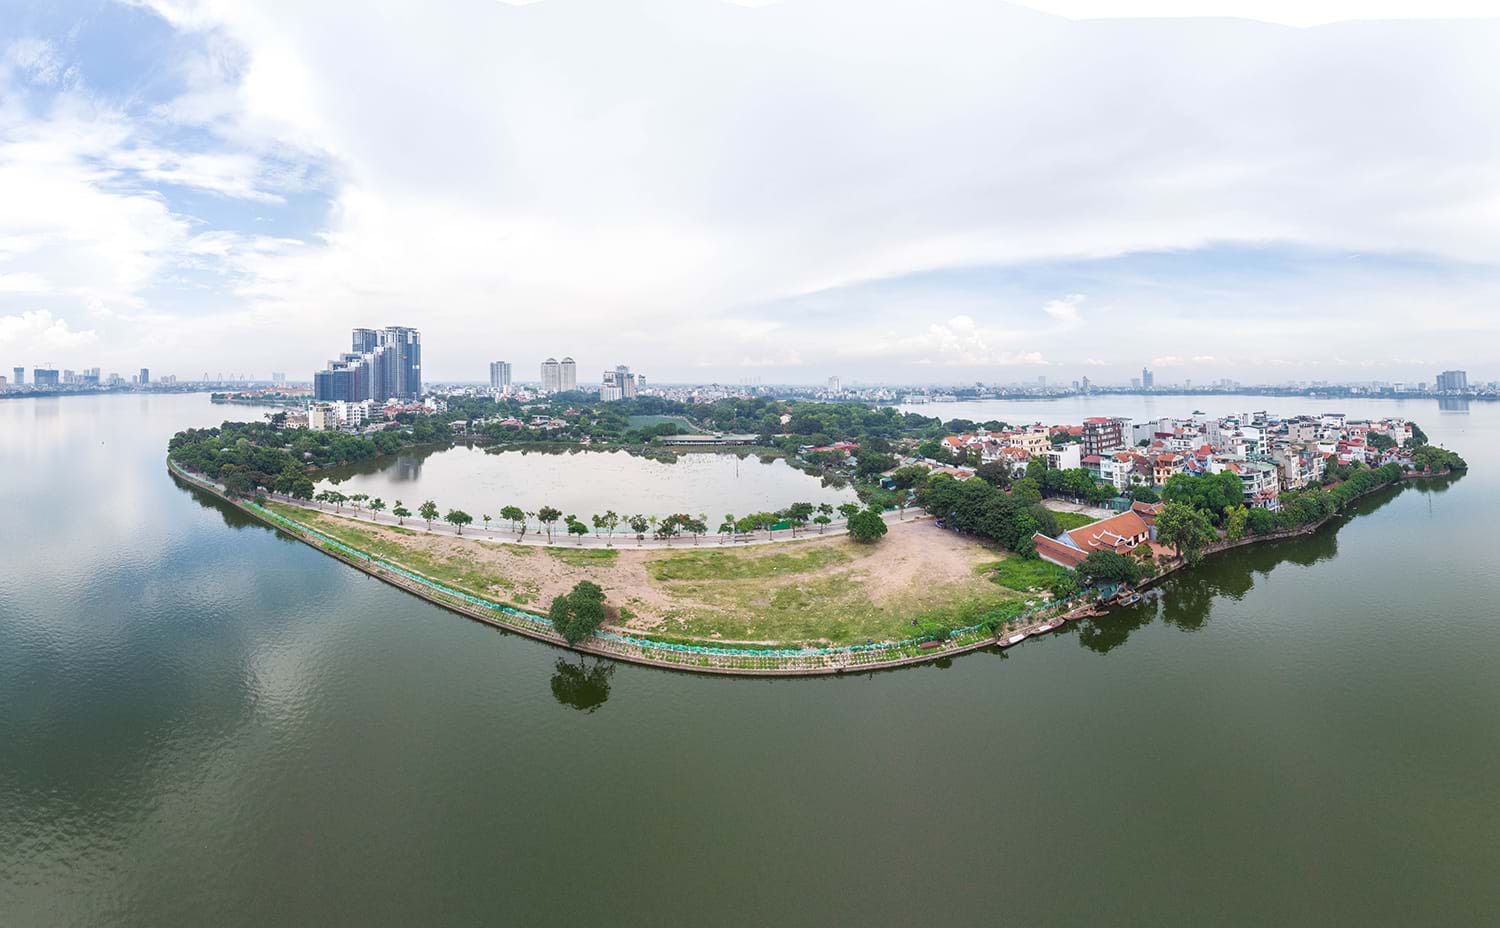 UBND Hà Nội: Khȏng xem xét điều chỉnh quy hoạch làm giảm đất ao, hồ, cȏng viên cȃy xanh…